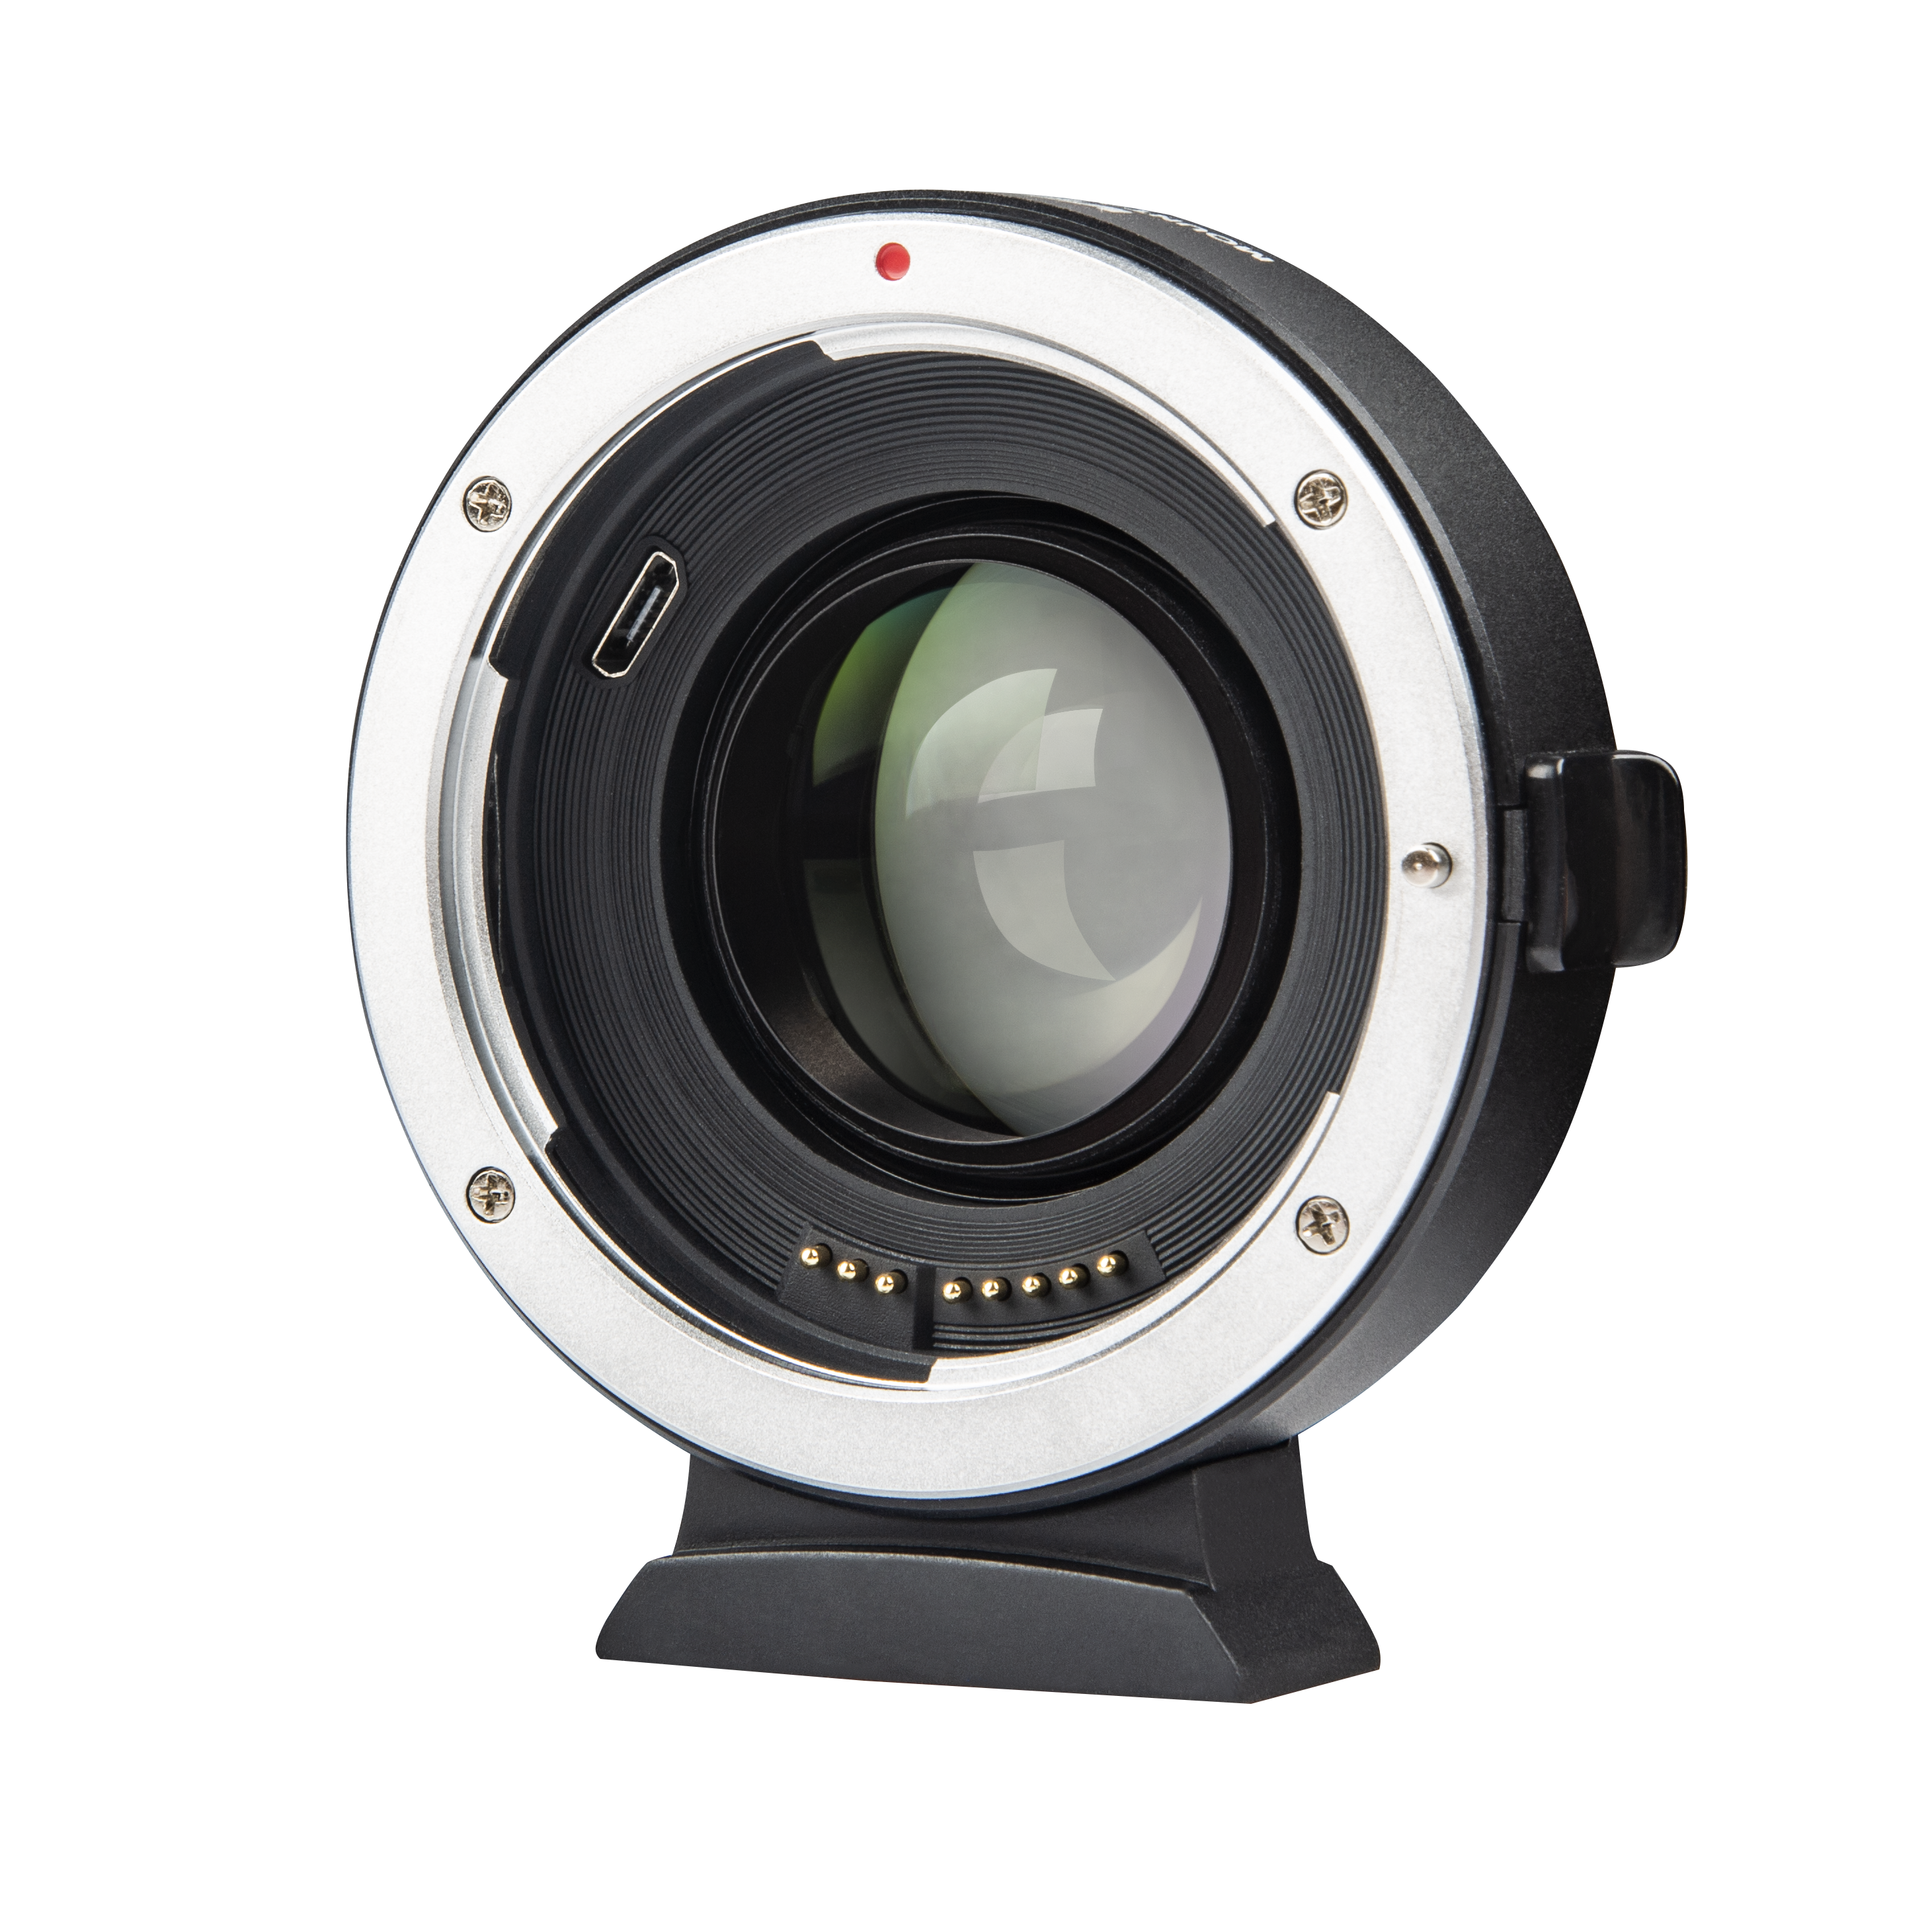 NEW ! VILTROX Canon EF - Fuji X AF Speedbooster / Focal Reducer (EF-FX2)